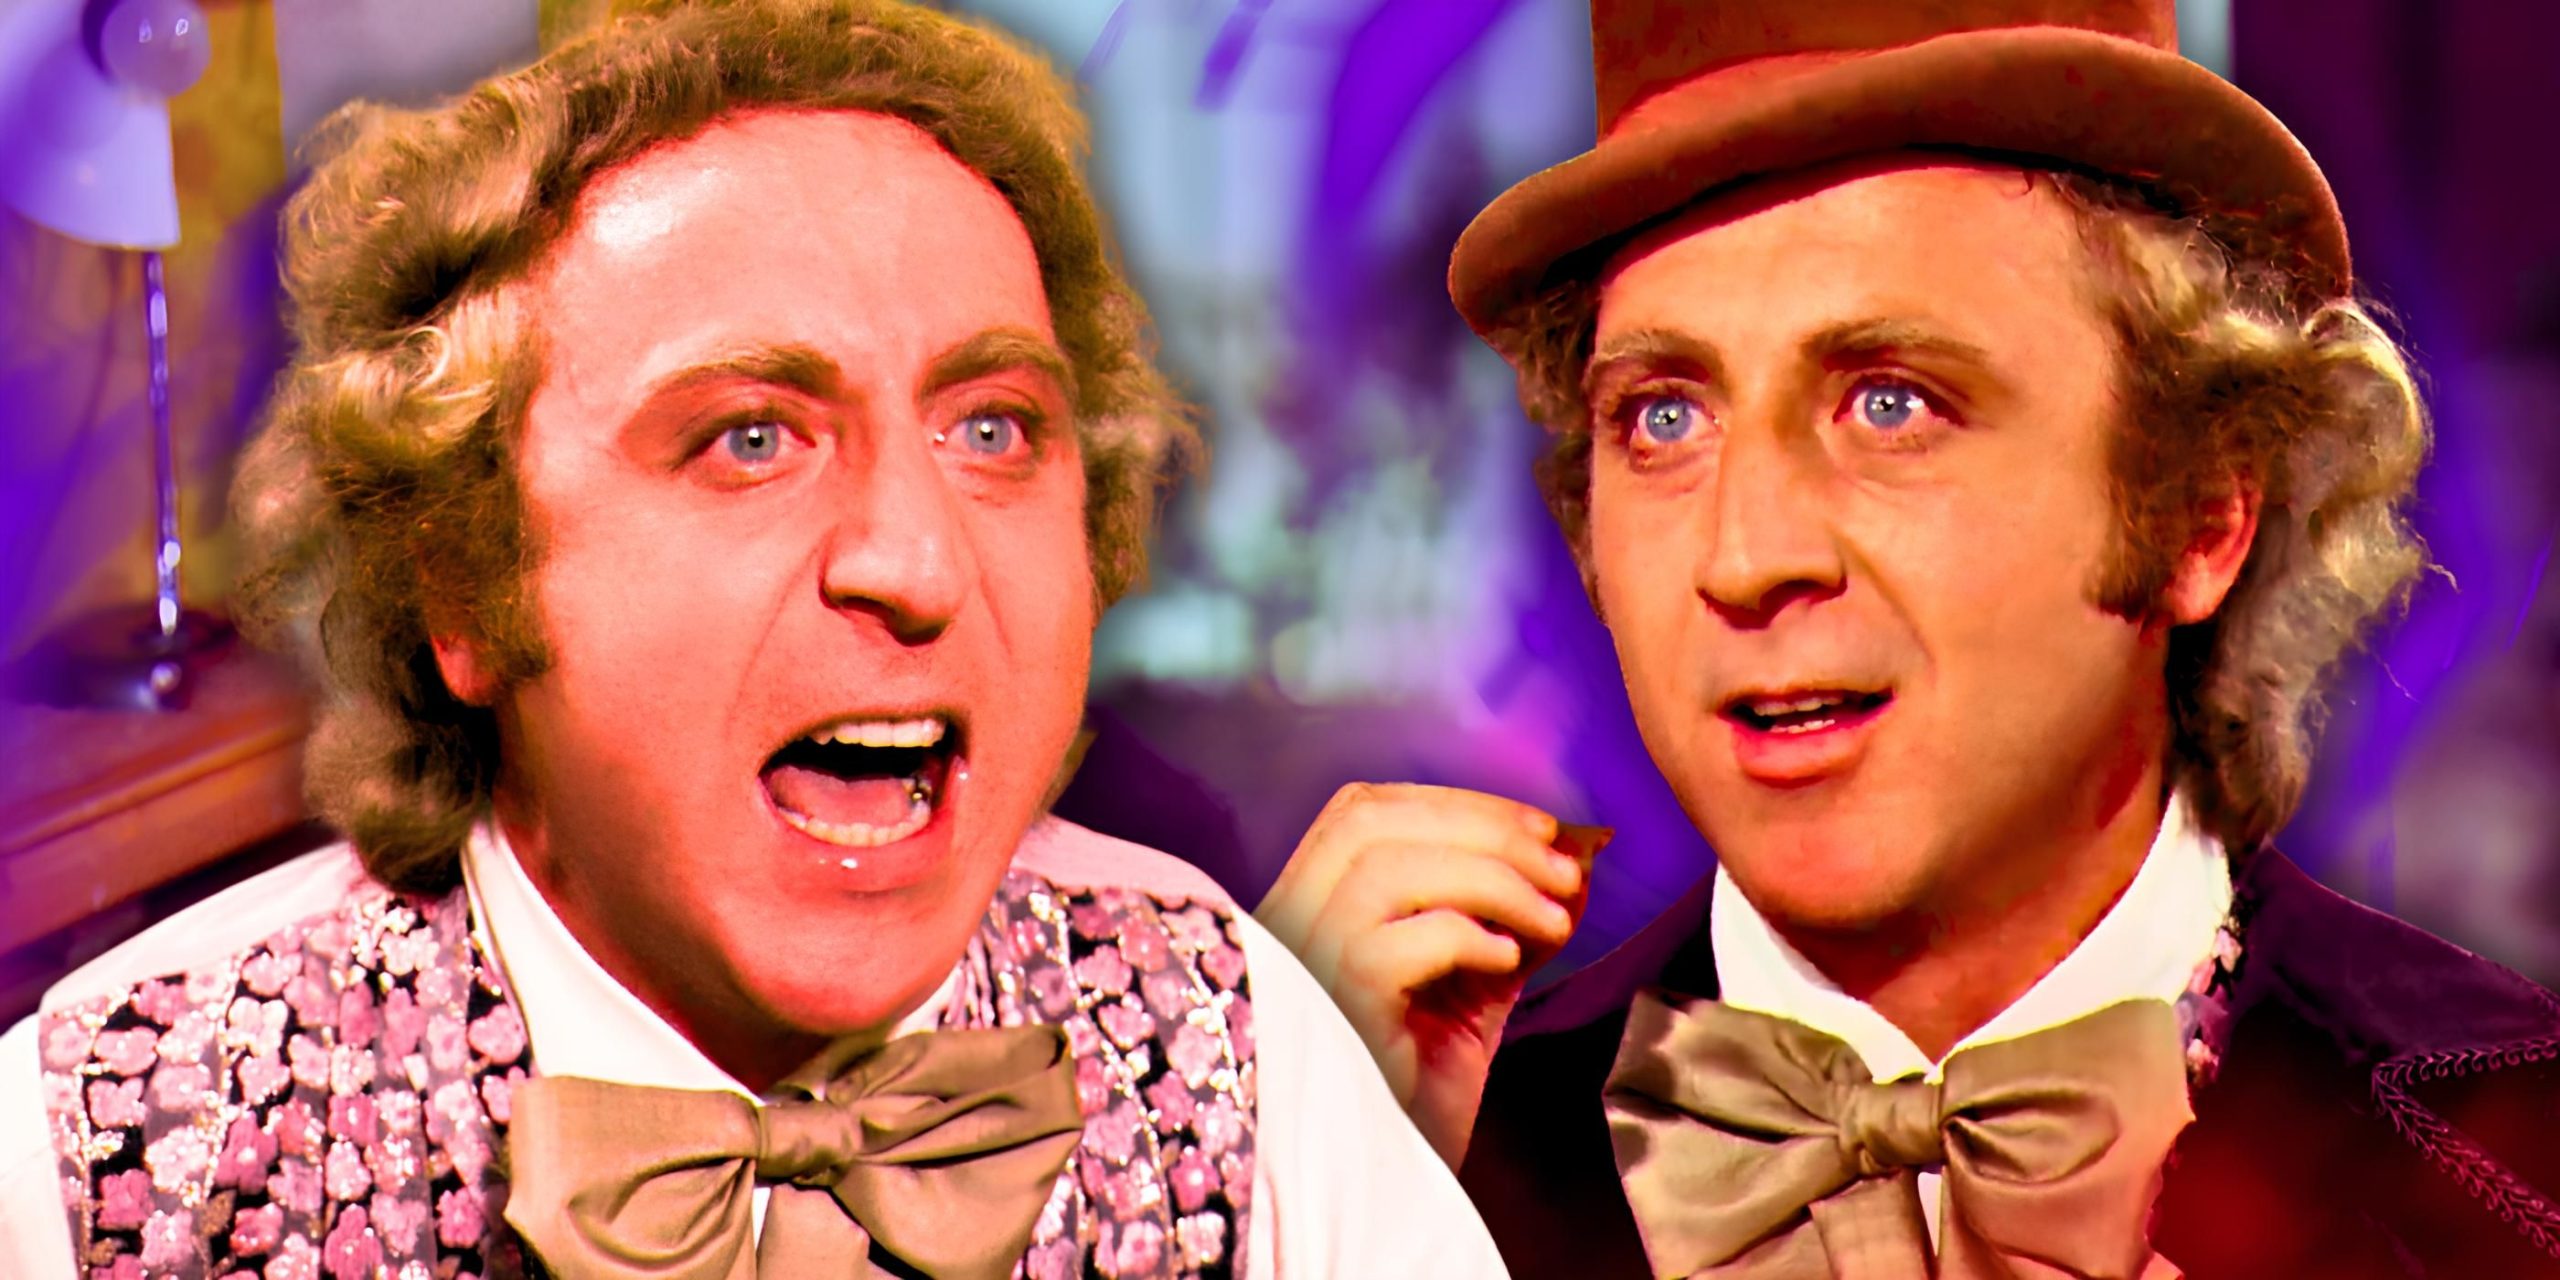 La teoría más oscura sobre Willy Wonka se resolverá definitivamente en 2024… según el MCU